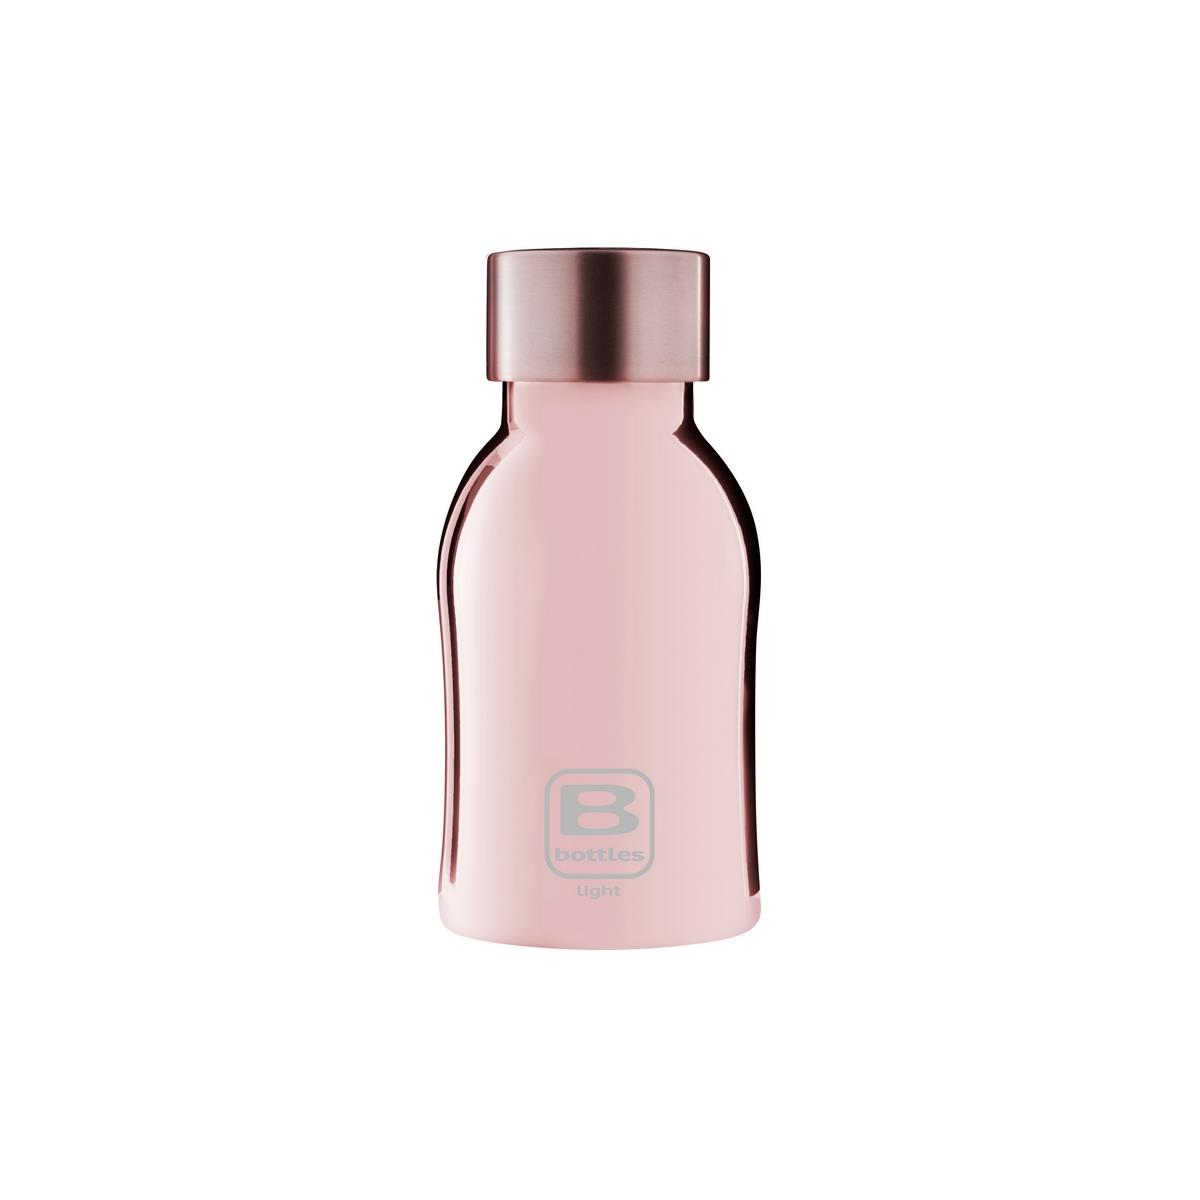 photo B Bottles Light - Rose Gold Lux ????- 350 ml - Ultraleichte und kompakte Flasche aus 18/10-Edelstah